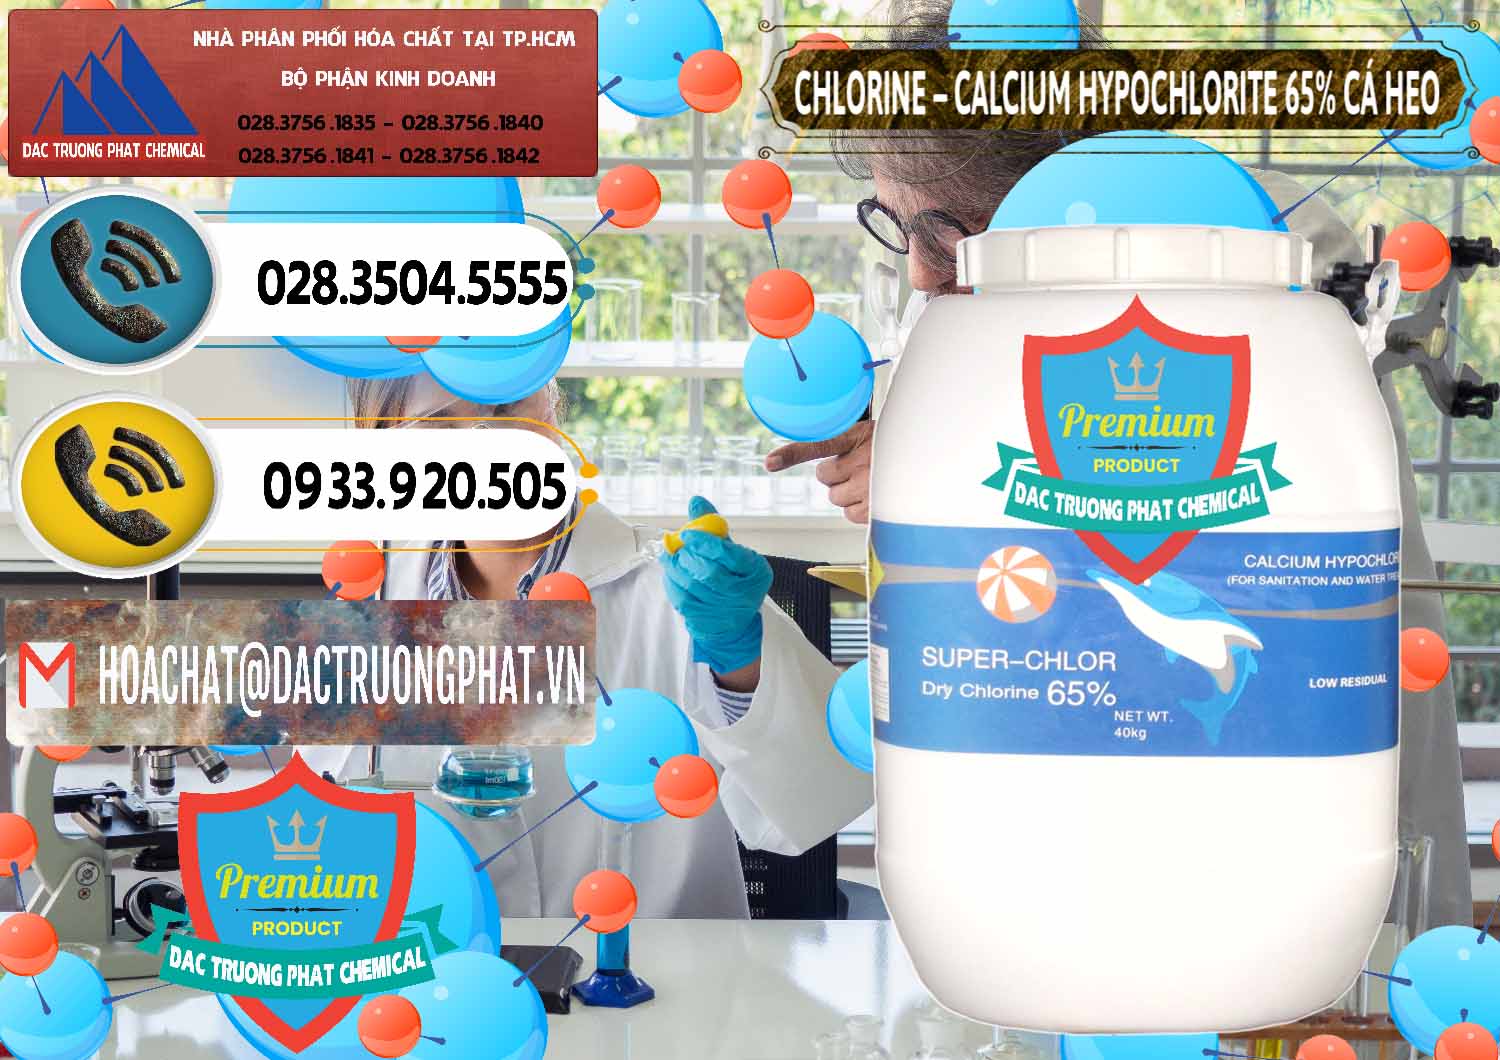 Công ty chuyên cung ứng và bán Clorin - Chlorine Cá Heo 65% Trung Quốc China - 0053 - Nơi chuyên cung ứng _ phân phối hóa chất tại TP.HCM - hoachatdetnhuom.vn